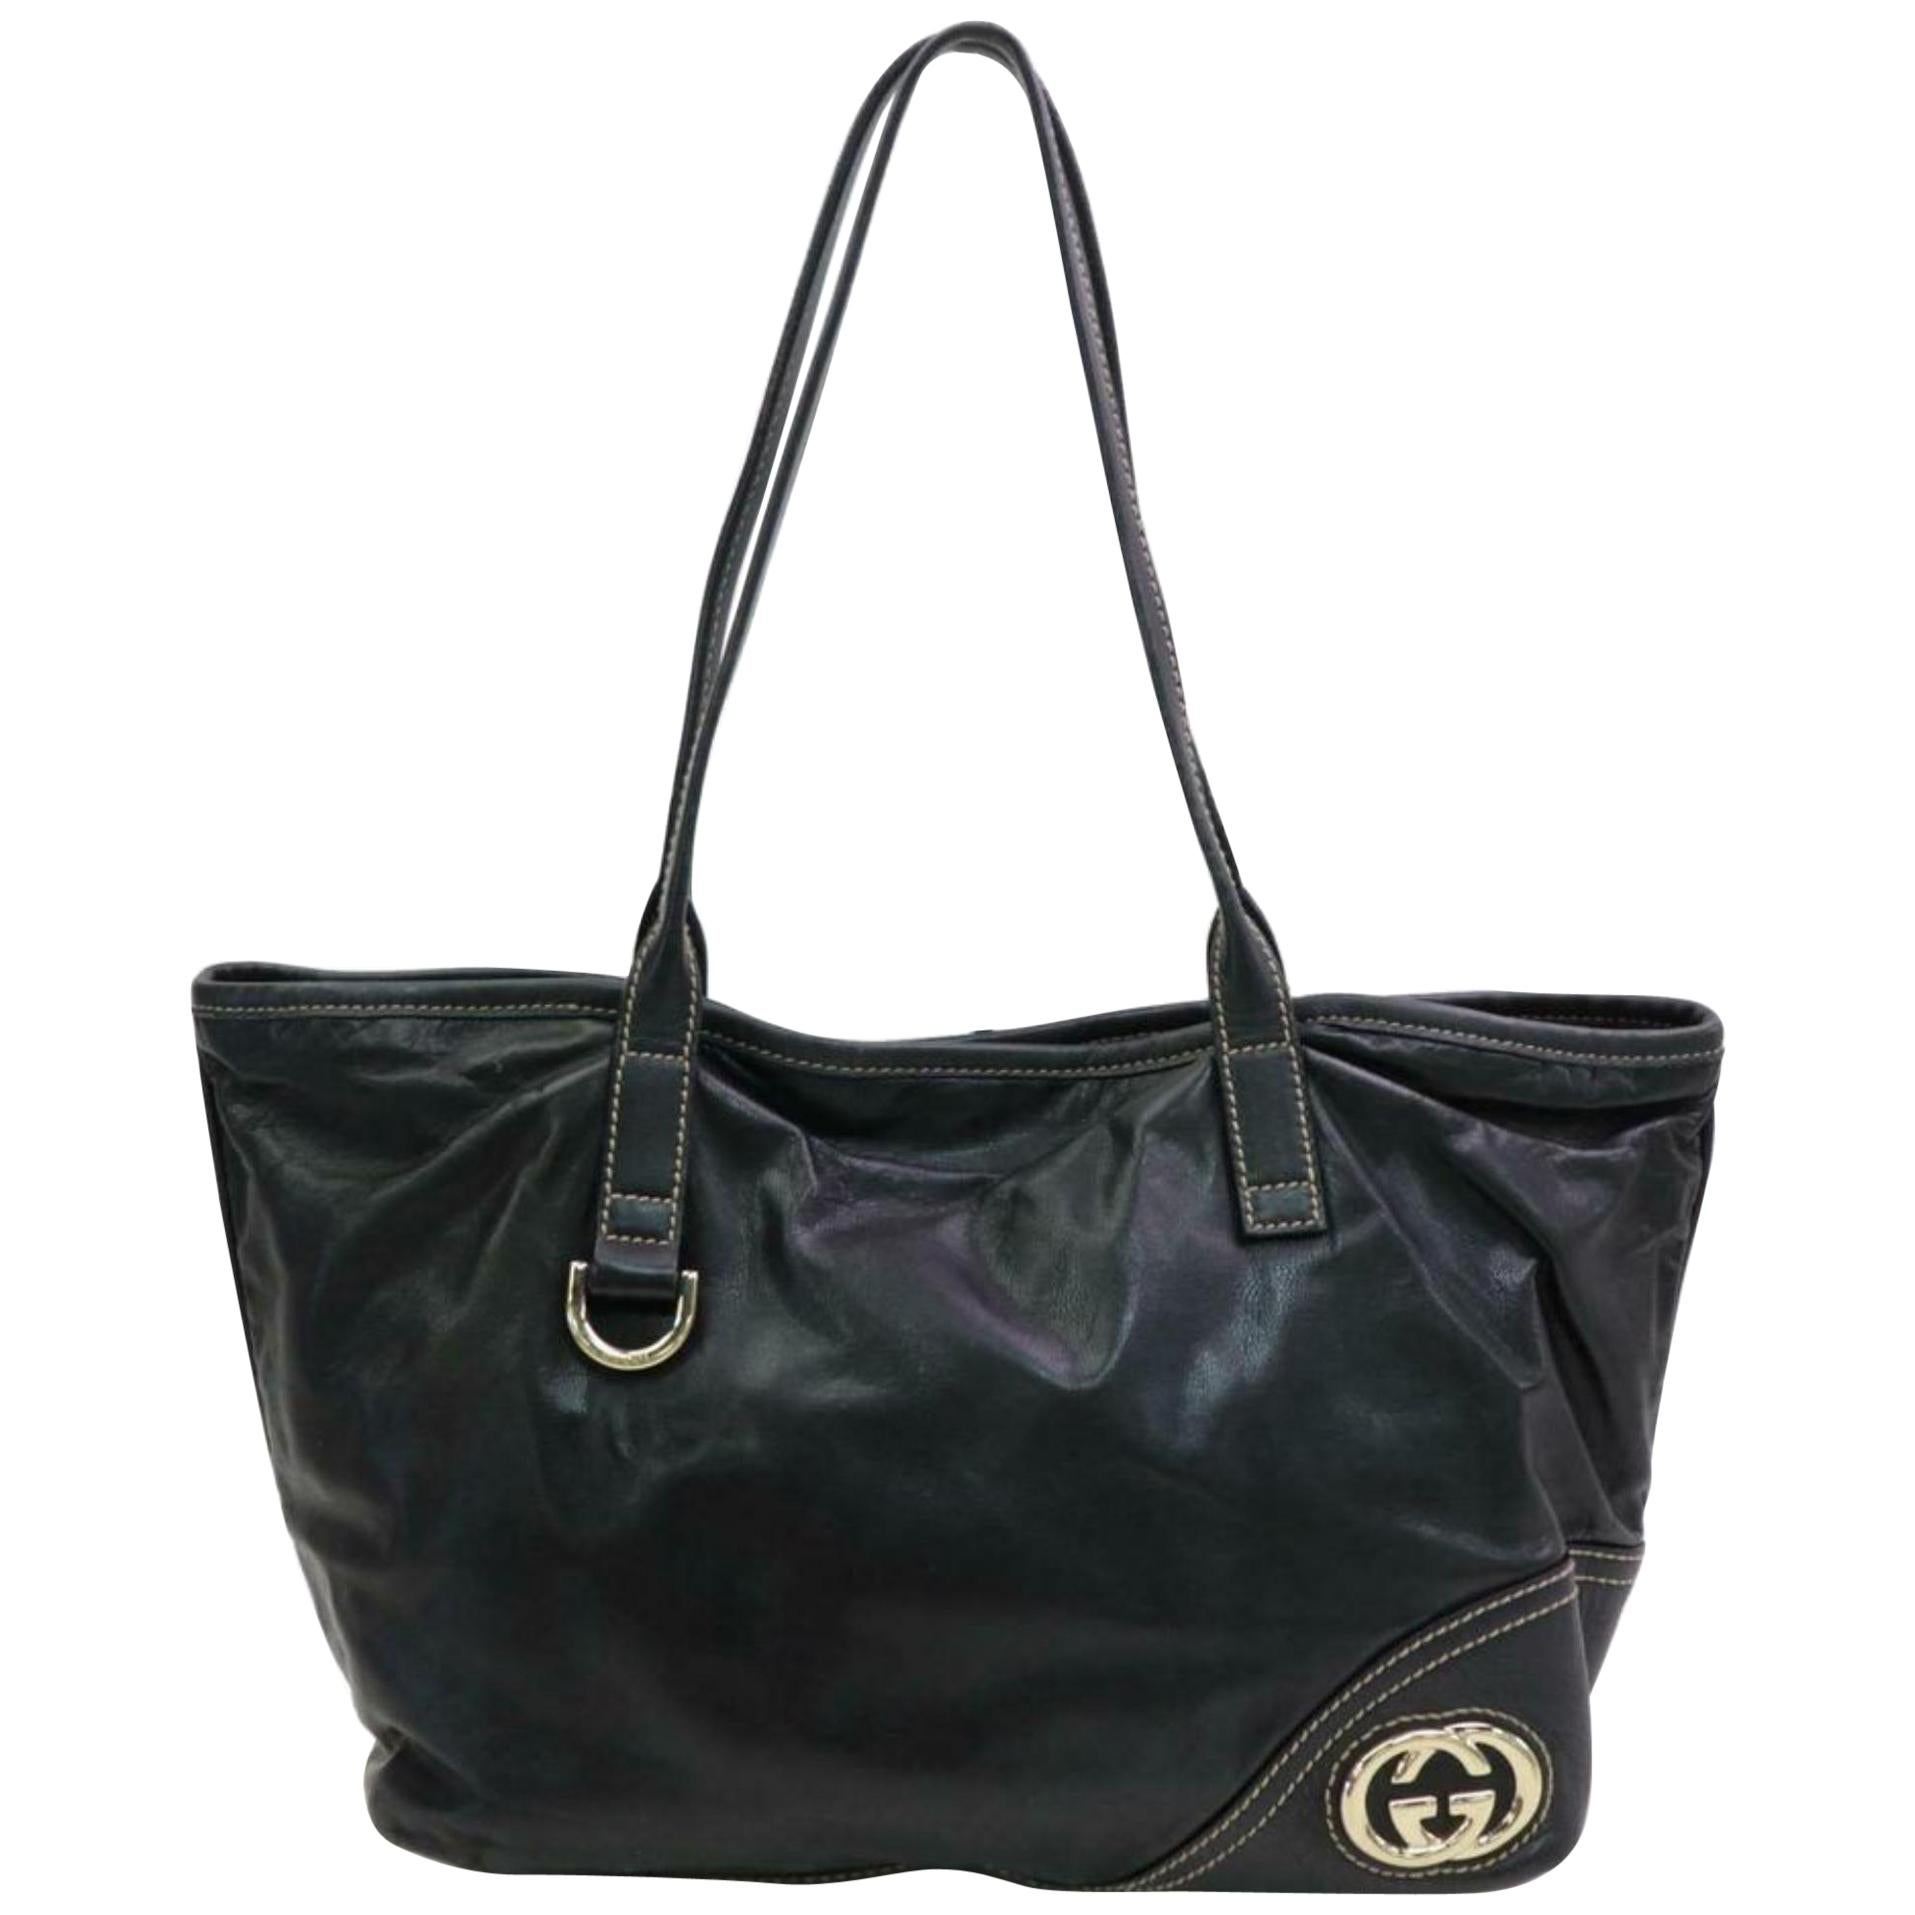 Gucci Britt Interlocking Logo Tote 870584 Black Leather Shoulder Bag For Sale